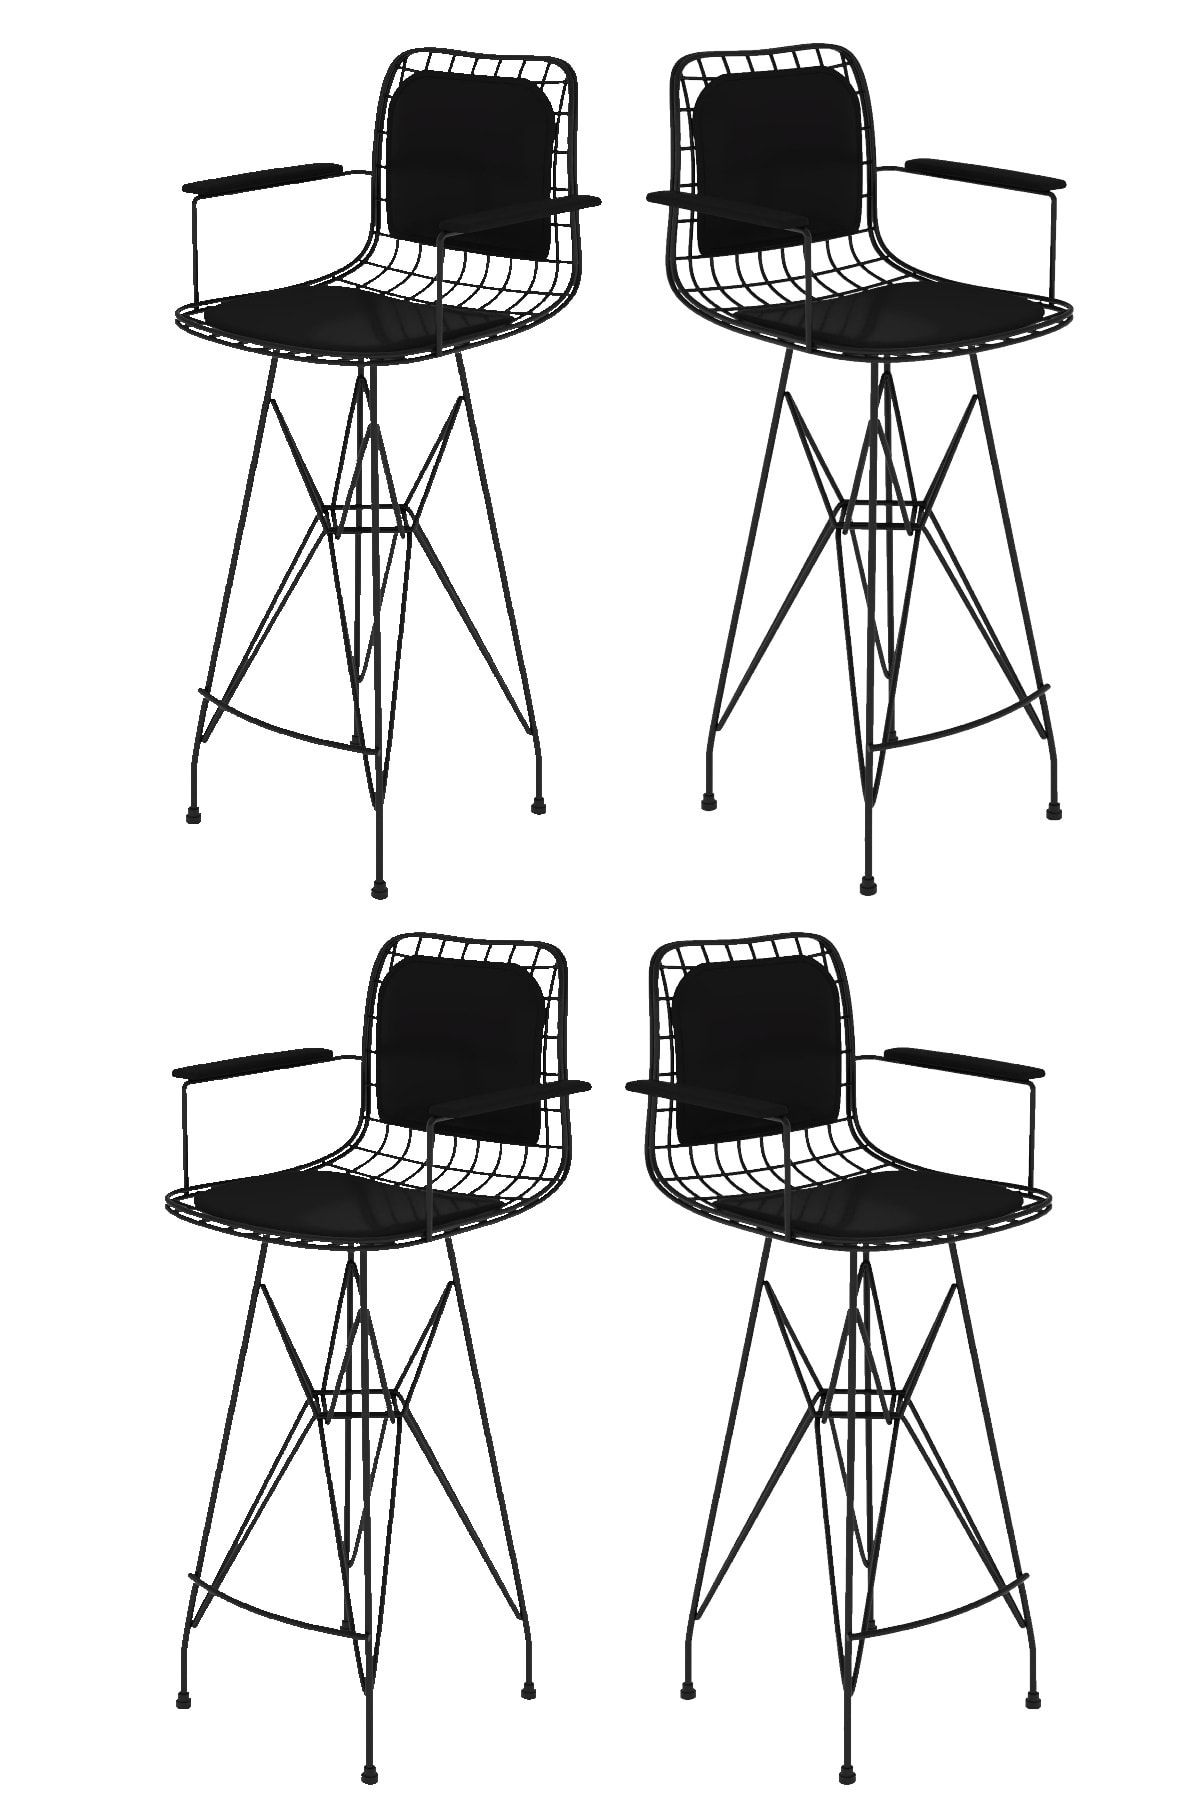 Kenzlife Knsz kafes tel bar sandalyesi 4 lü zengin syhsyh kolçaklı sırt minderli ofis cafe bahçe mutfak